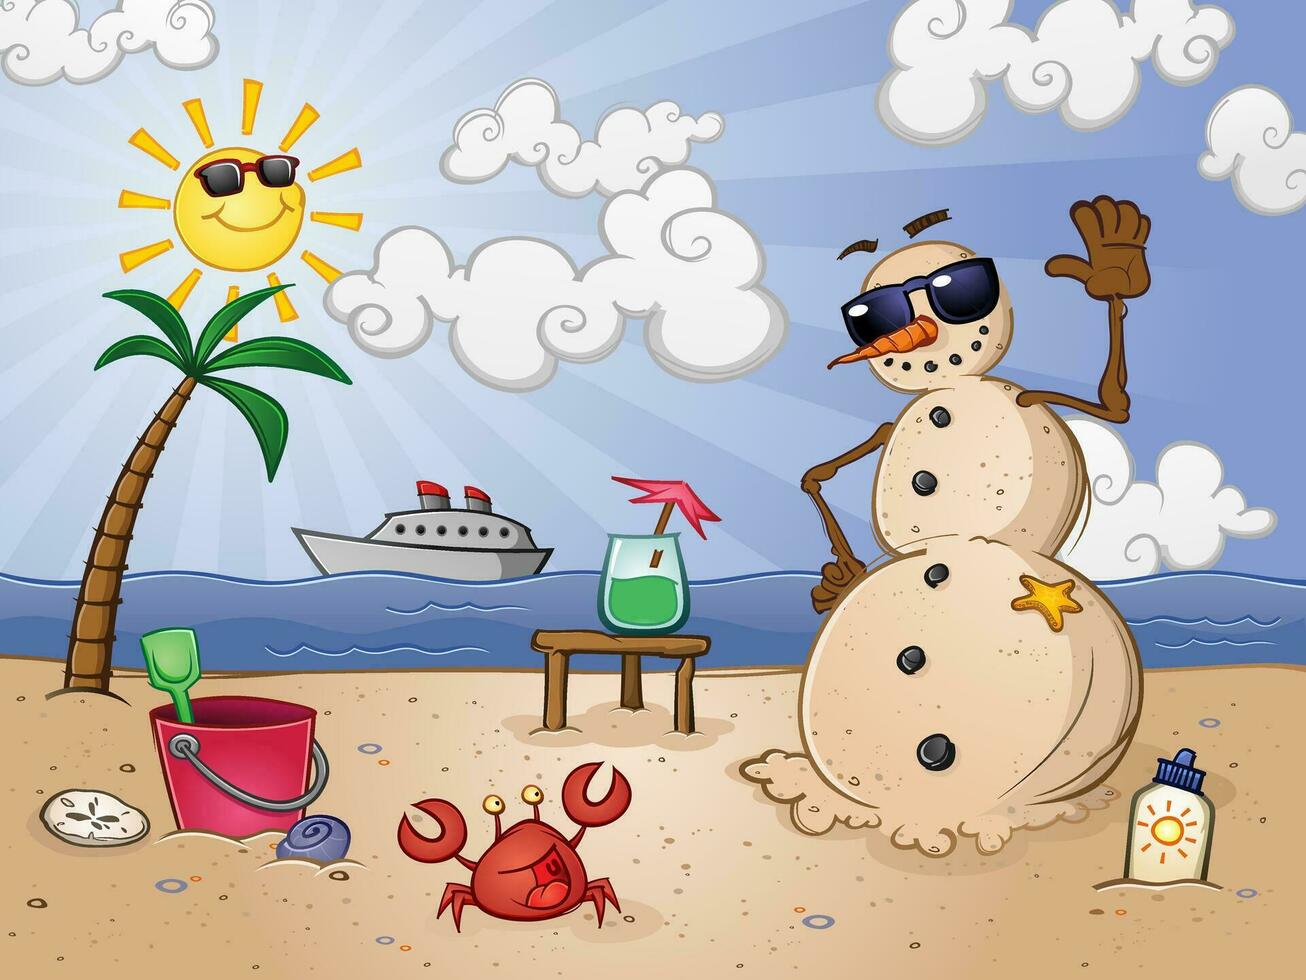 un monigote de nieve hecho de arena, descansando en un tropical playa con juguetes y amigos como un crucero Embarcacion pasa por en el Oceano vector